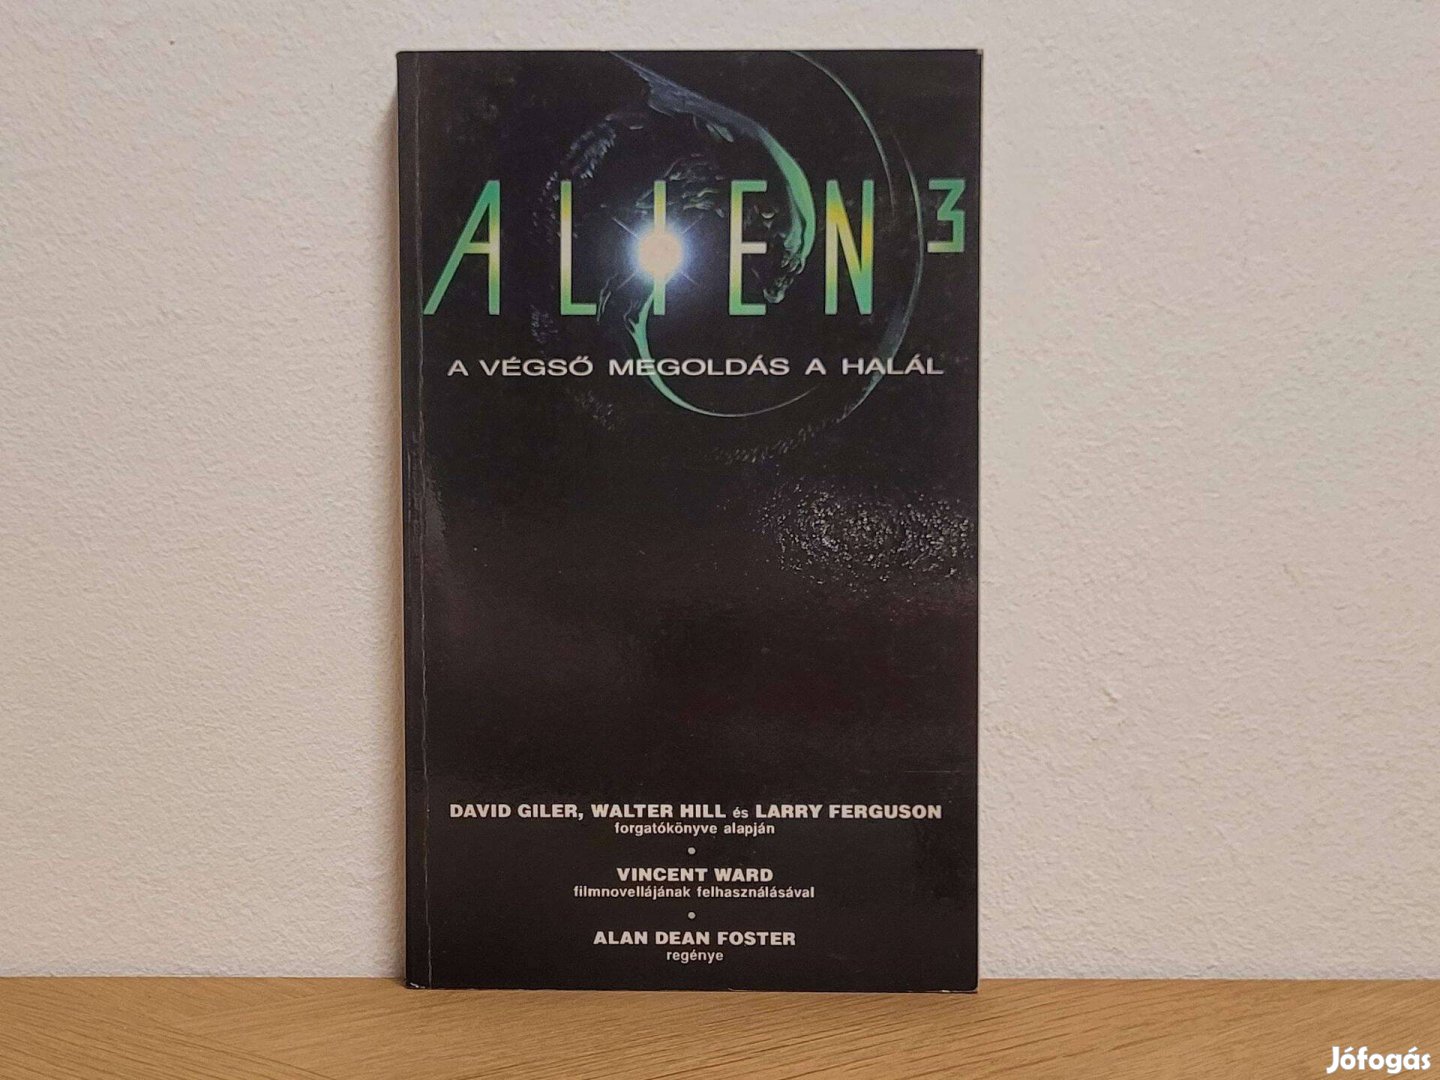 A végső megoldás a halál (Alien 3) - Alan Dean Foster könyv eladó